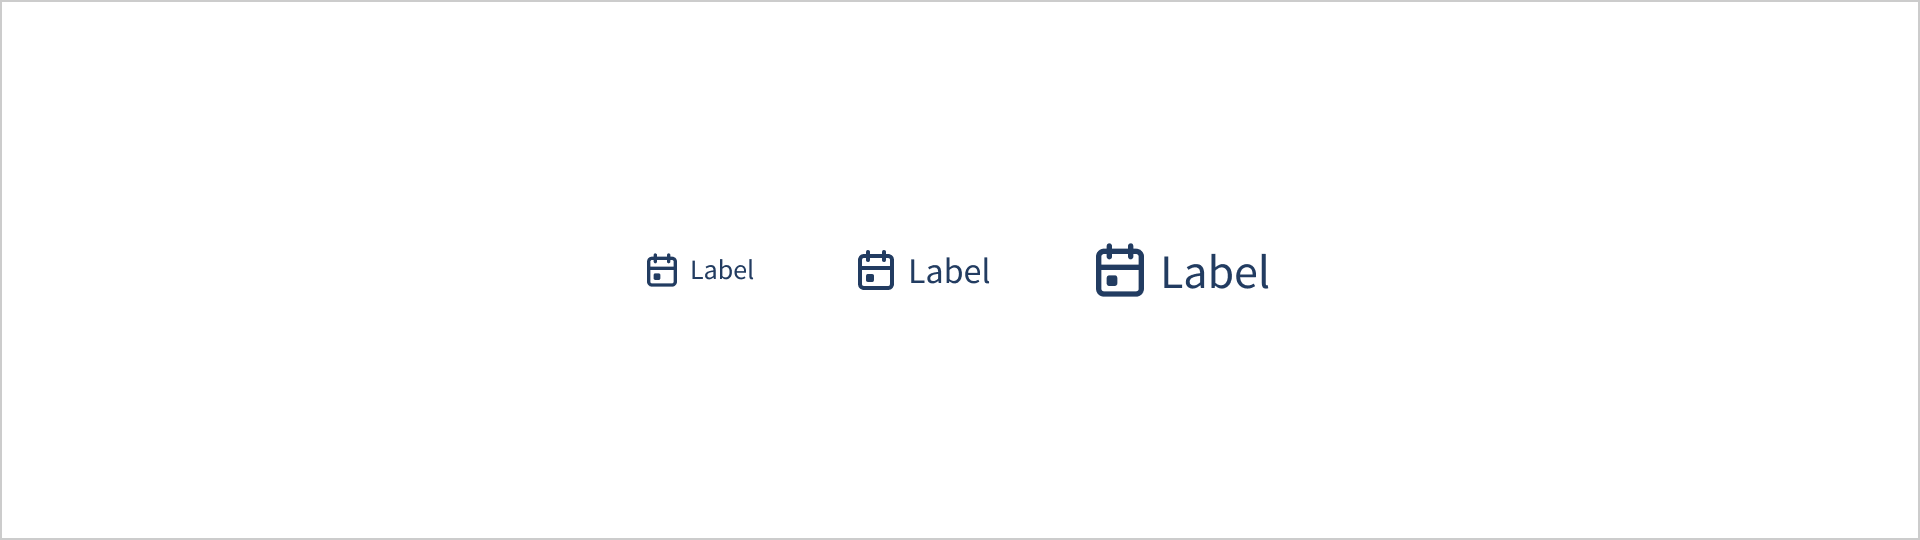 Een lijstje van 3 labels met voor elk label een kalender icoon. De labels worden groter en het kalender icoon schaalt mee.